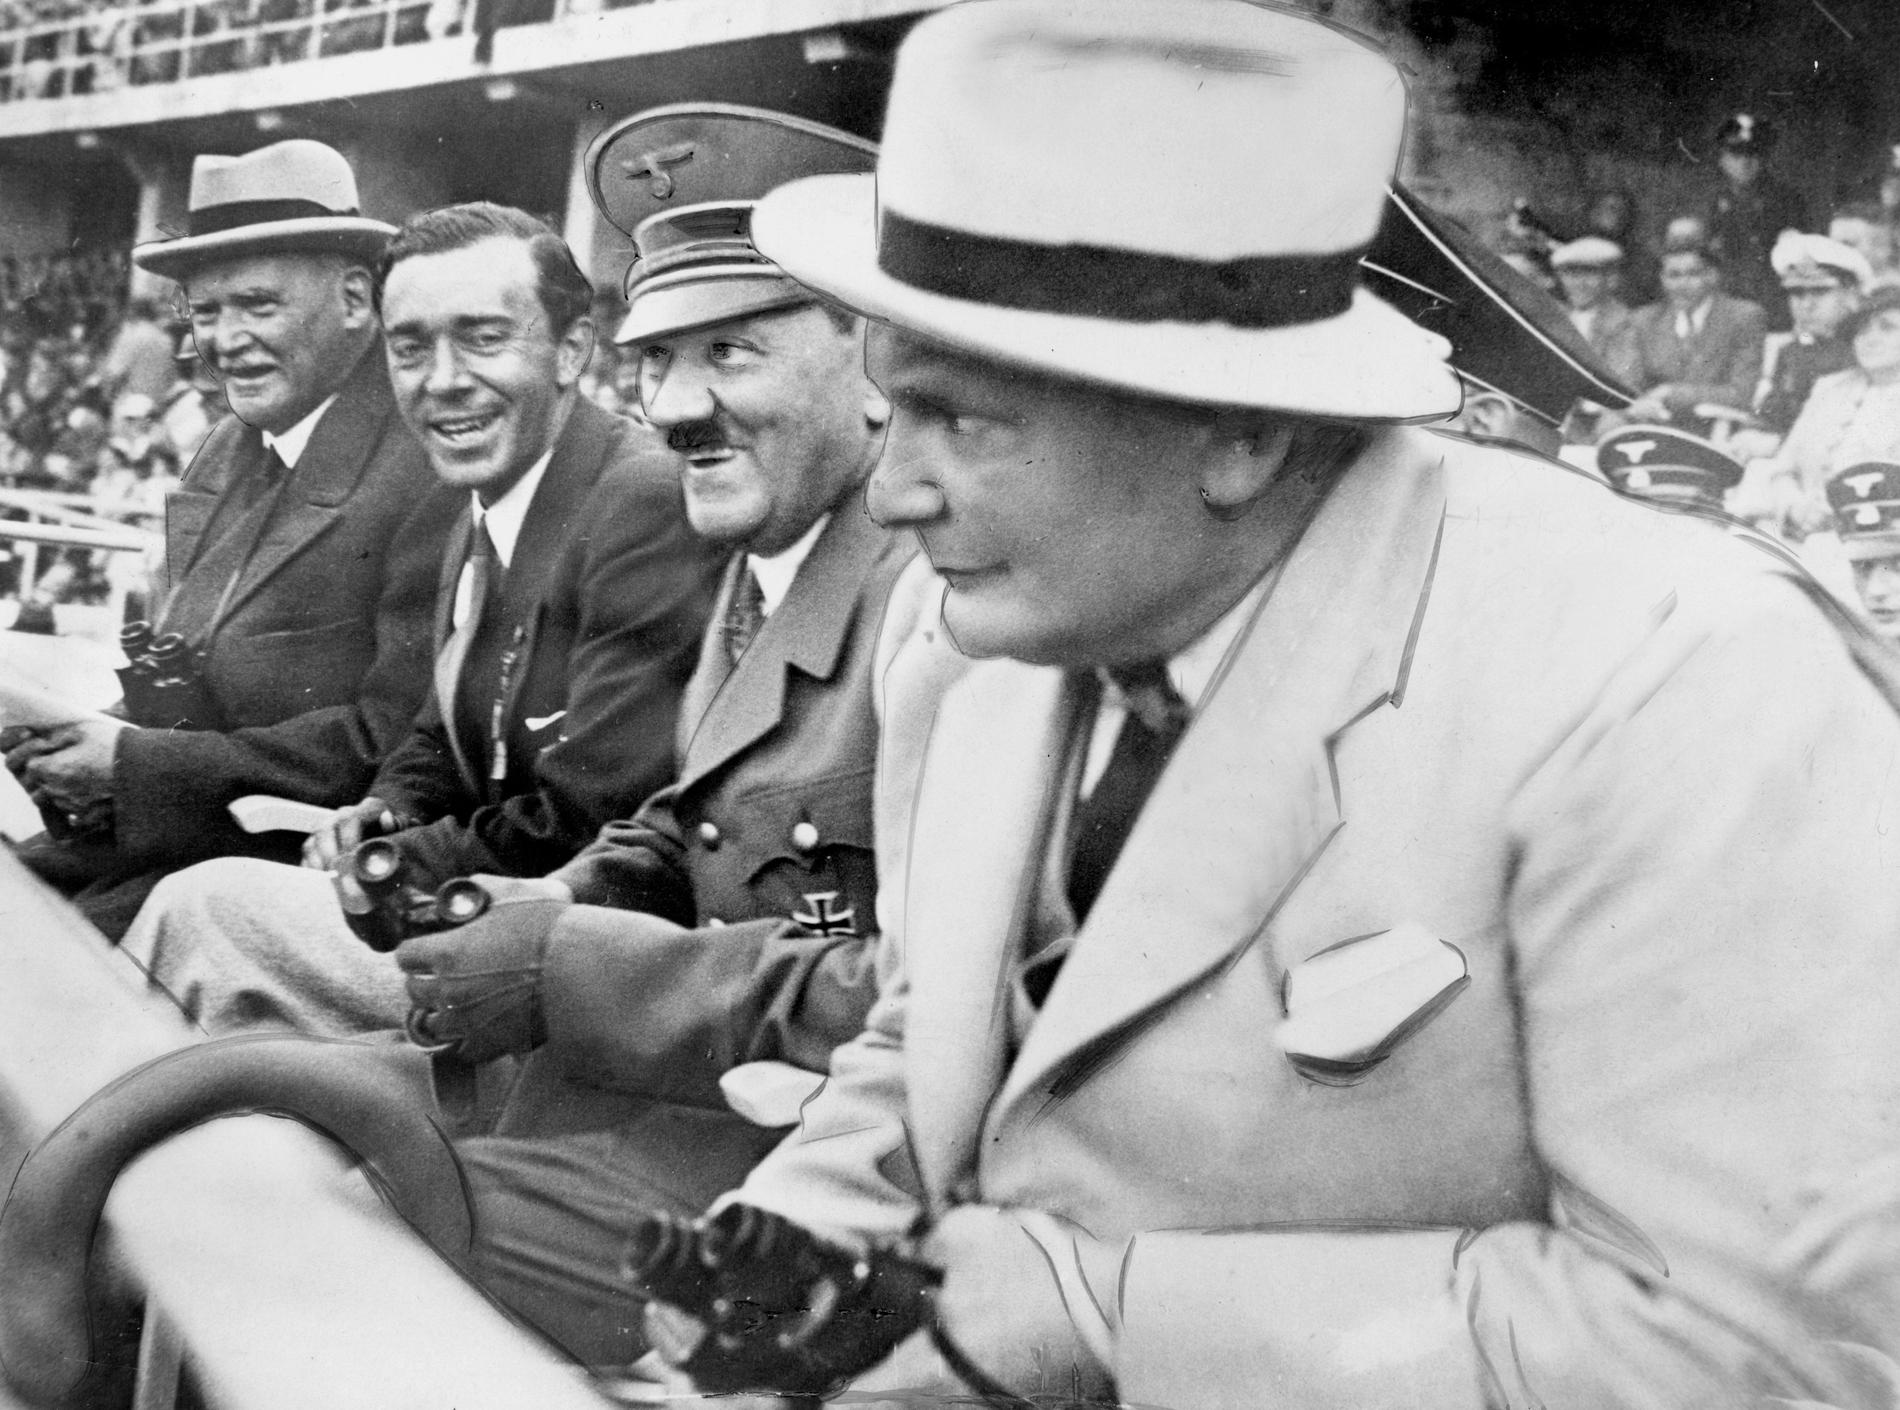 Kungafamiljens relationer med Nazityskland gav dem en delad lojalitet. På bilden Sveriges arvprins Gustaf Adolf tillsammans med Adolf Hitler och Hermann Göring vid Berlinolympiaden 1936.